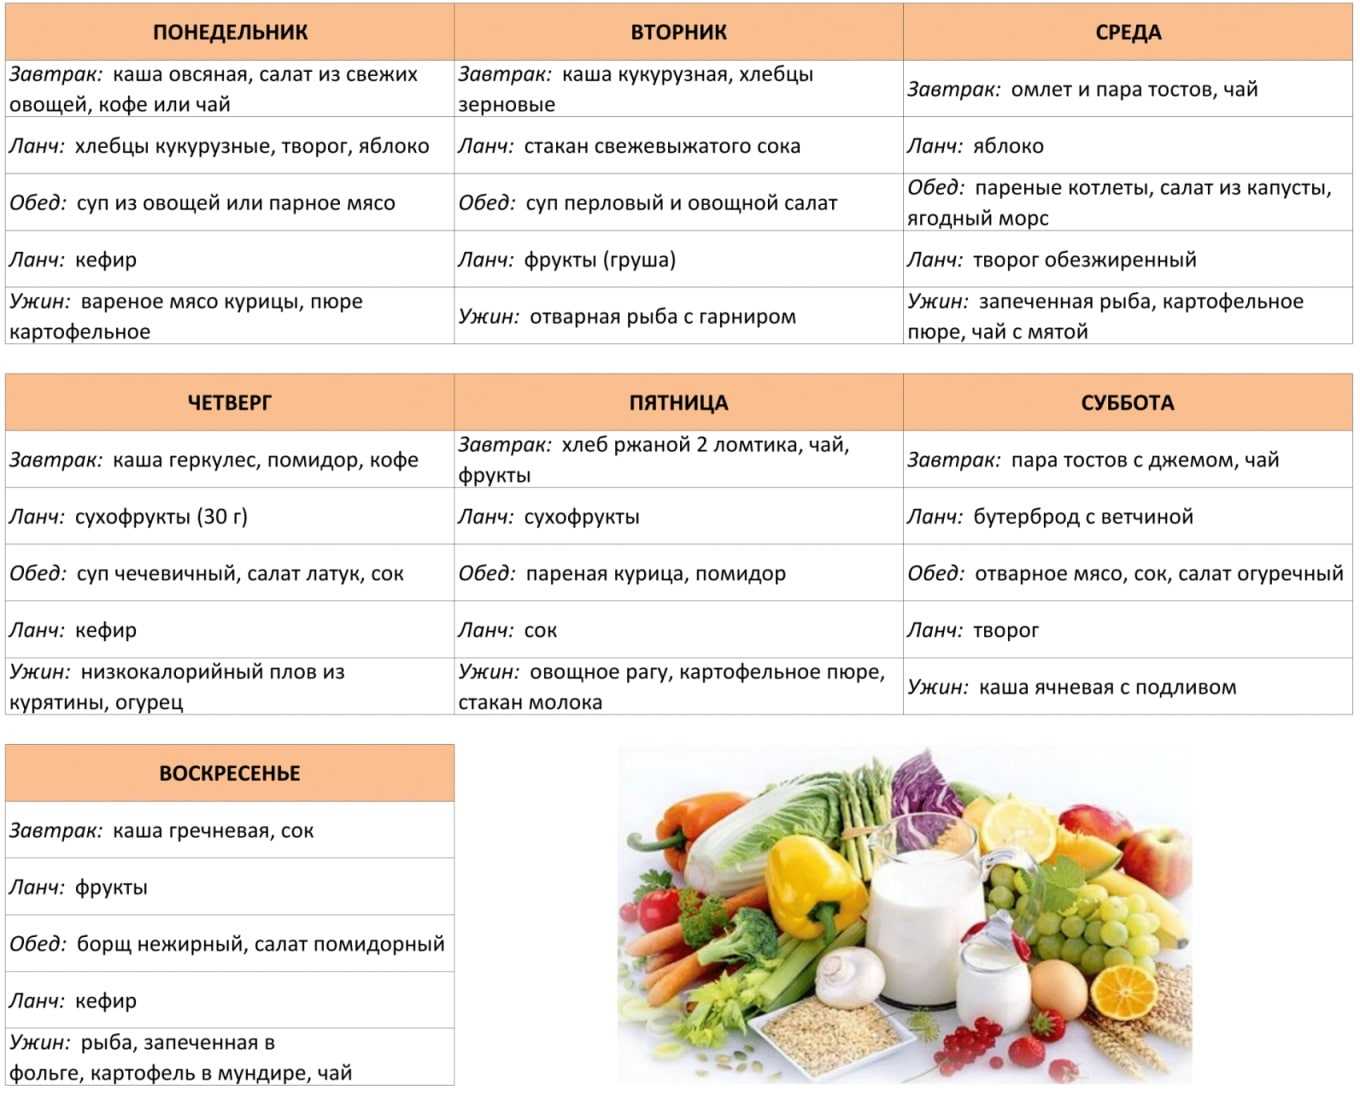 Кефирная диета ларисы долиной на 7 дней - меню для быстрого похудения и результаты